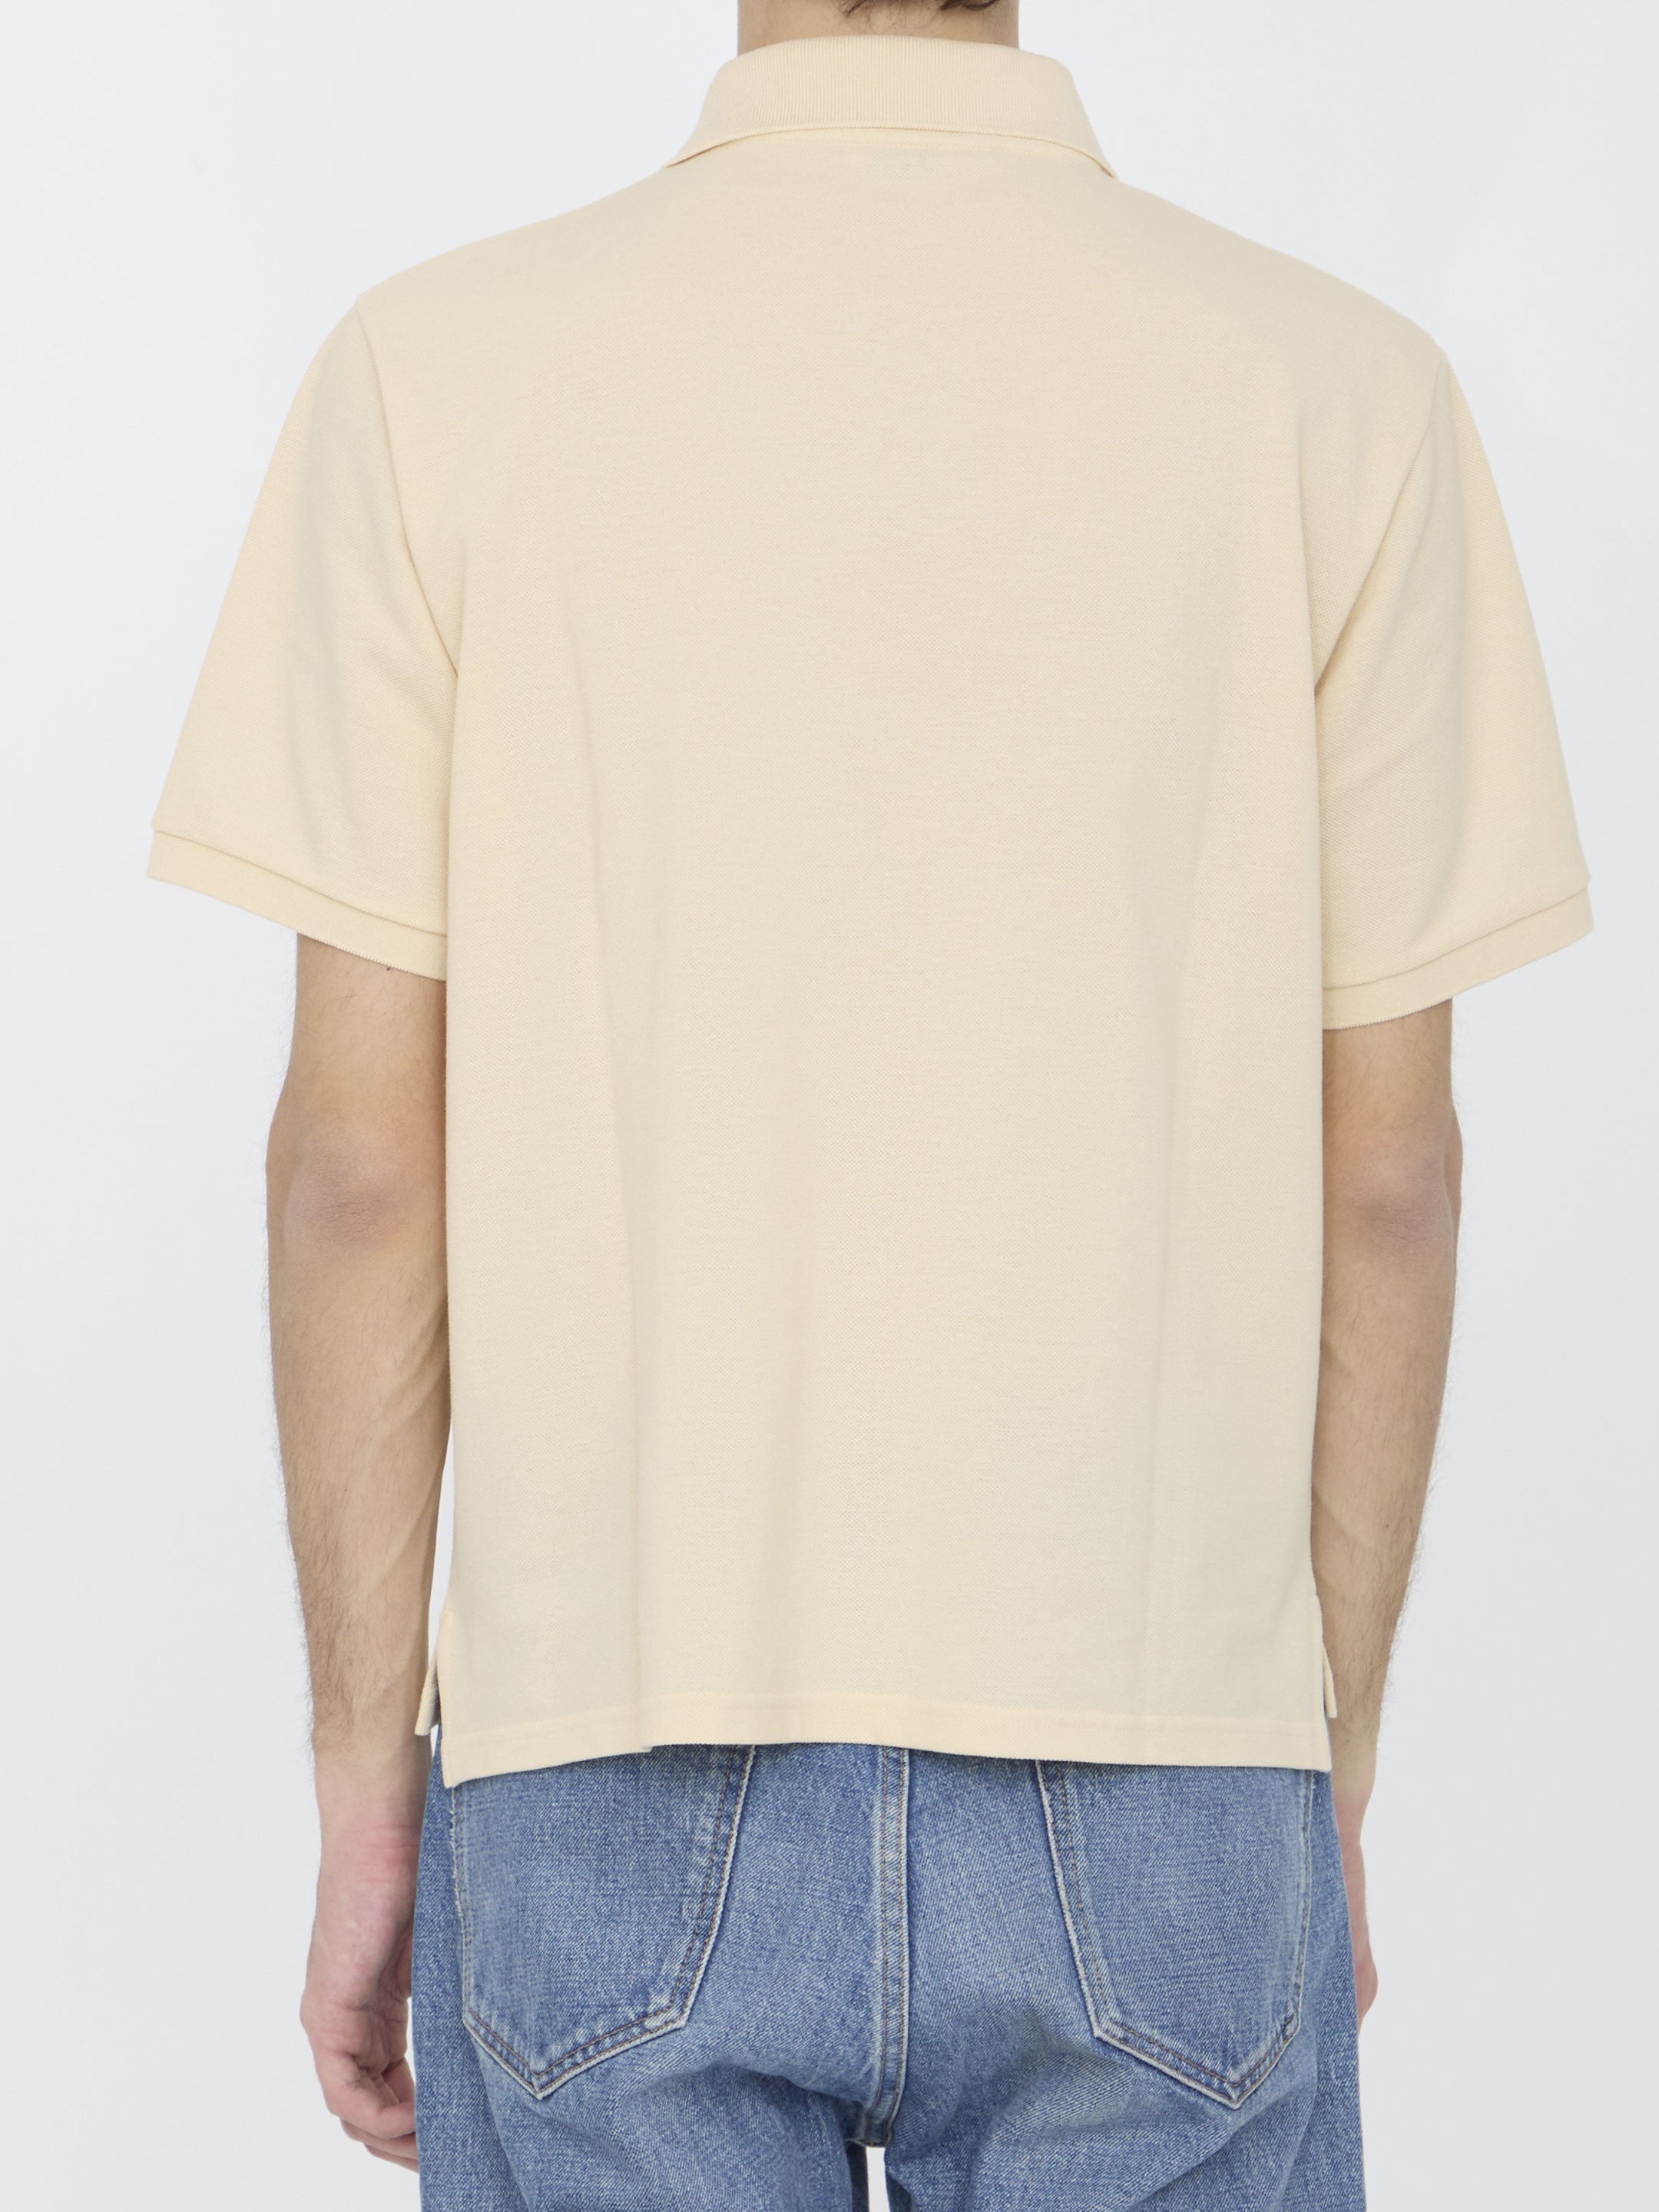 SAINT-LAURENT-OUTLET-SALE-Cassandre-polo-shirt-Shirts-ARCHIVE-COLLECTION-4.jpg